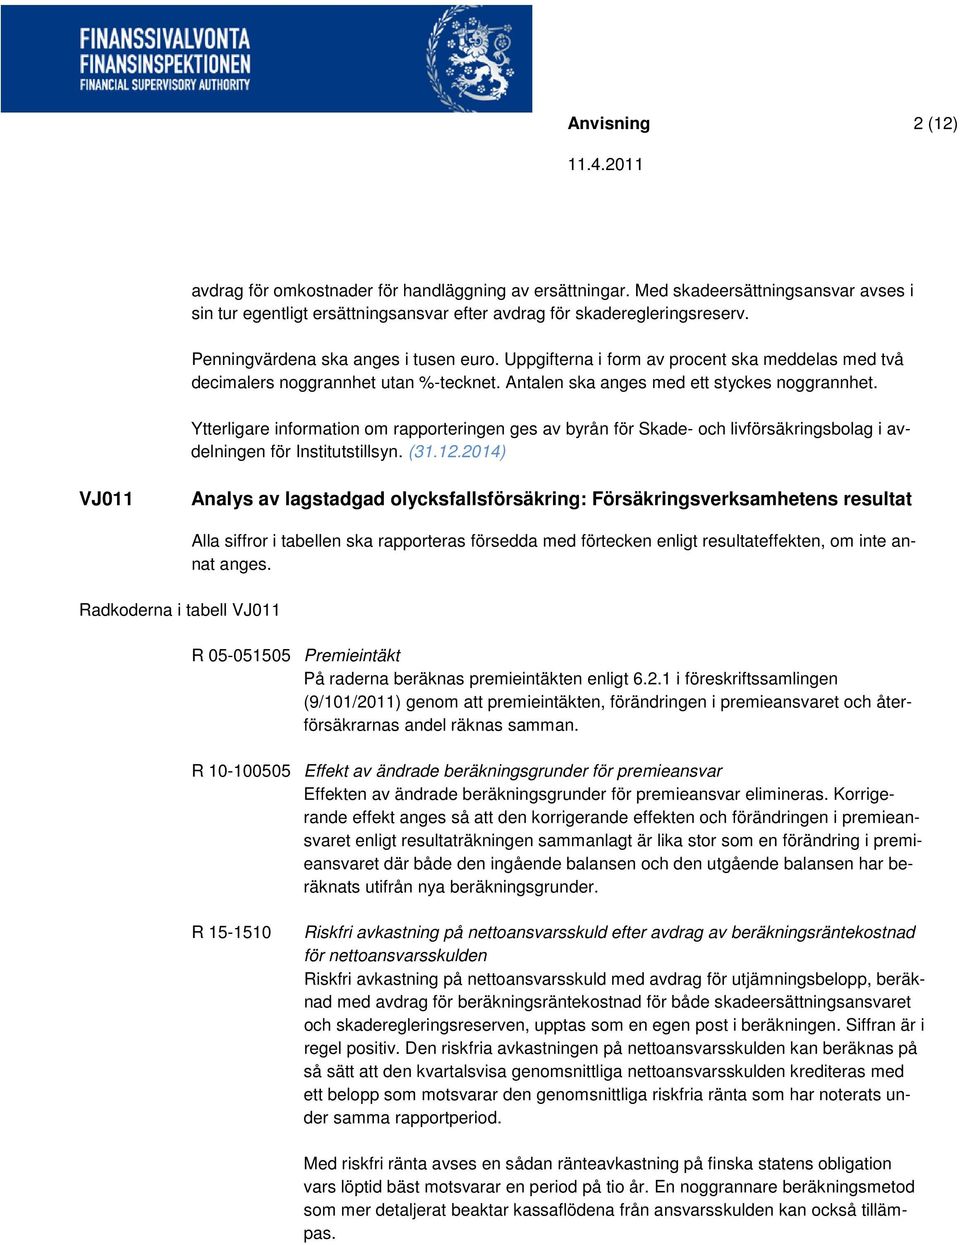 Ytterligare information om rapporteringen ges av byrån för Skade- och livförsäkringsbolag i avdelningen för Institutstillsyn. (31.12.